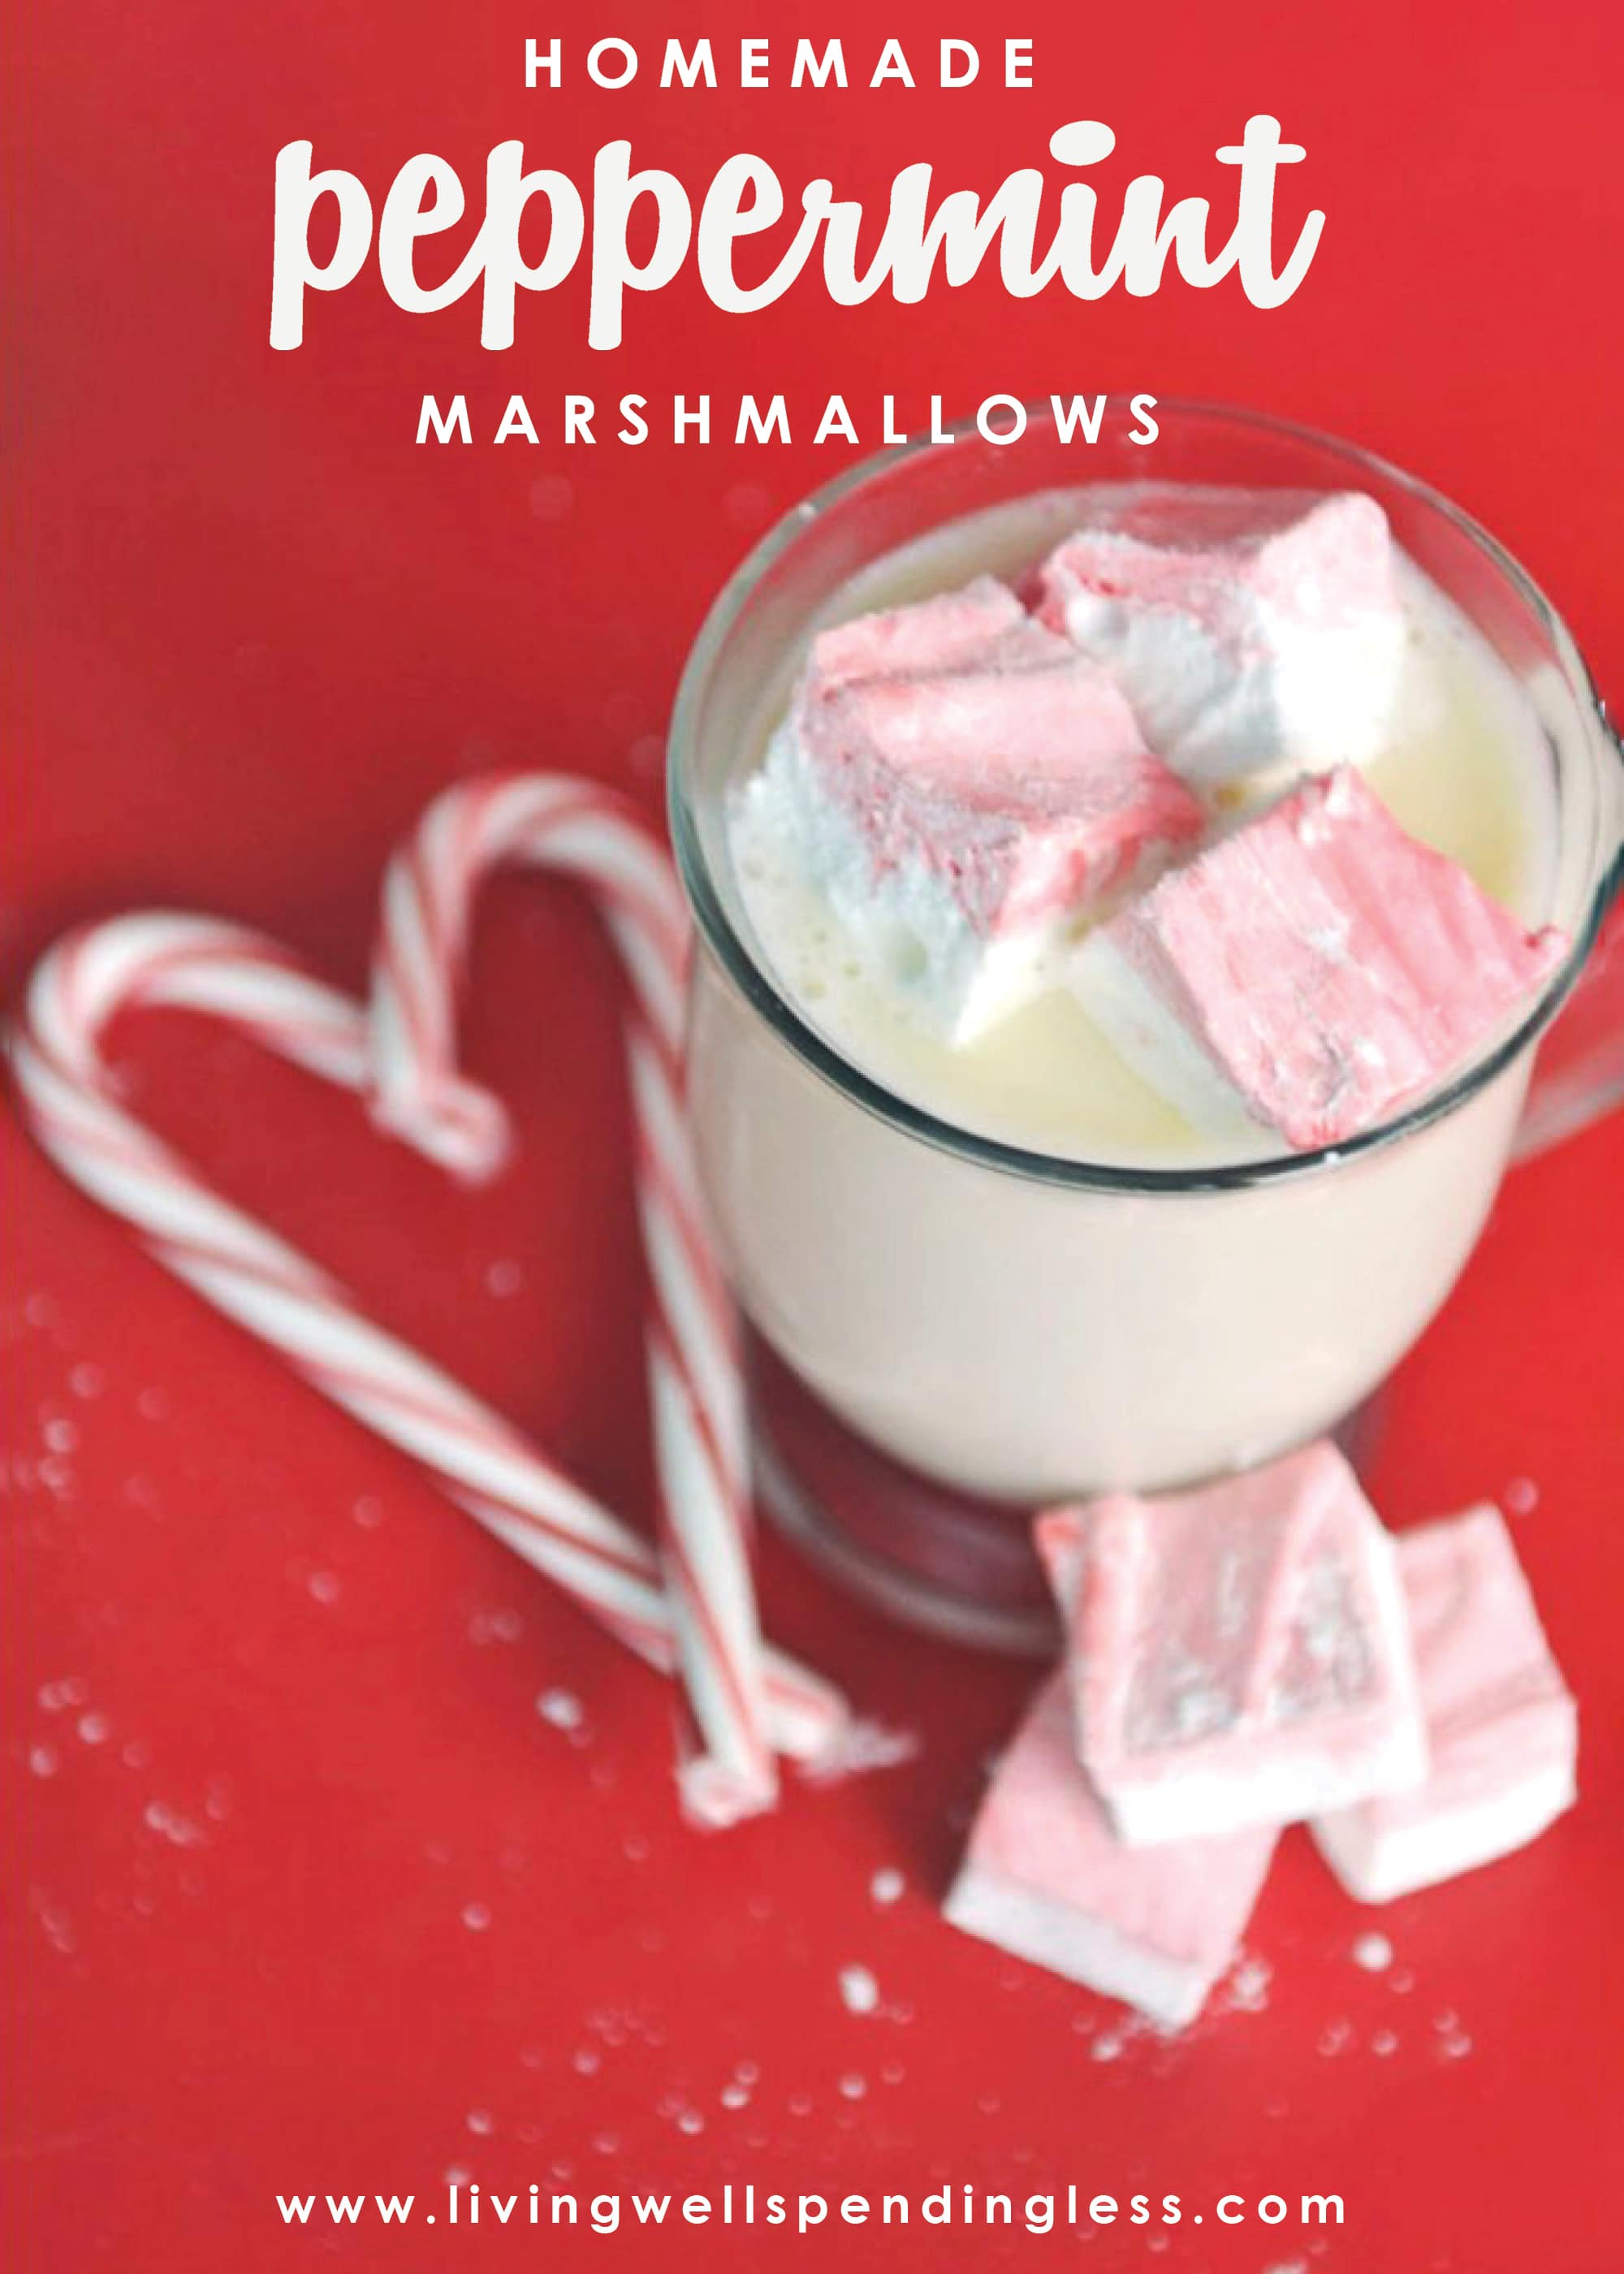 Homemade Peppermint Marshmallows | Living Well Spending Less®